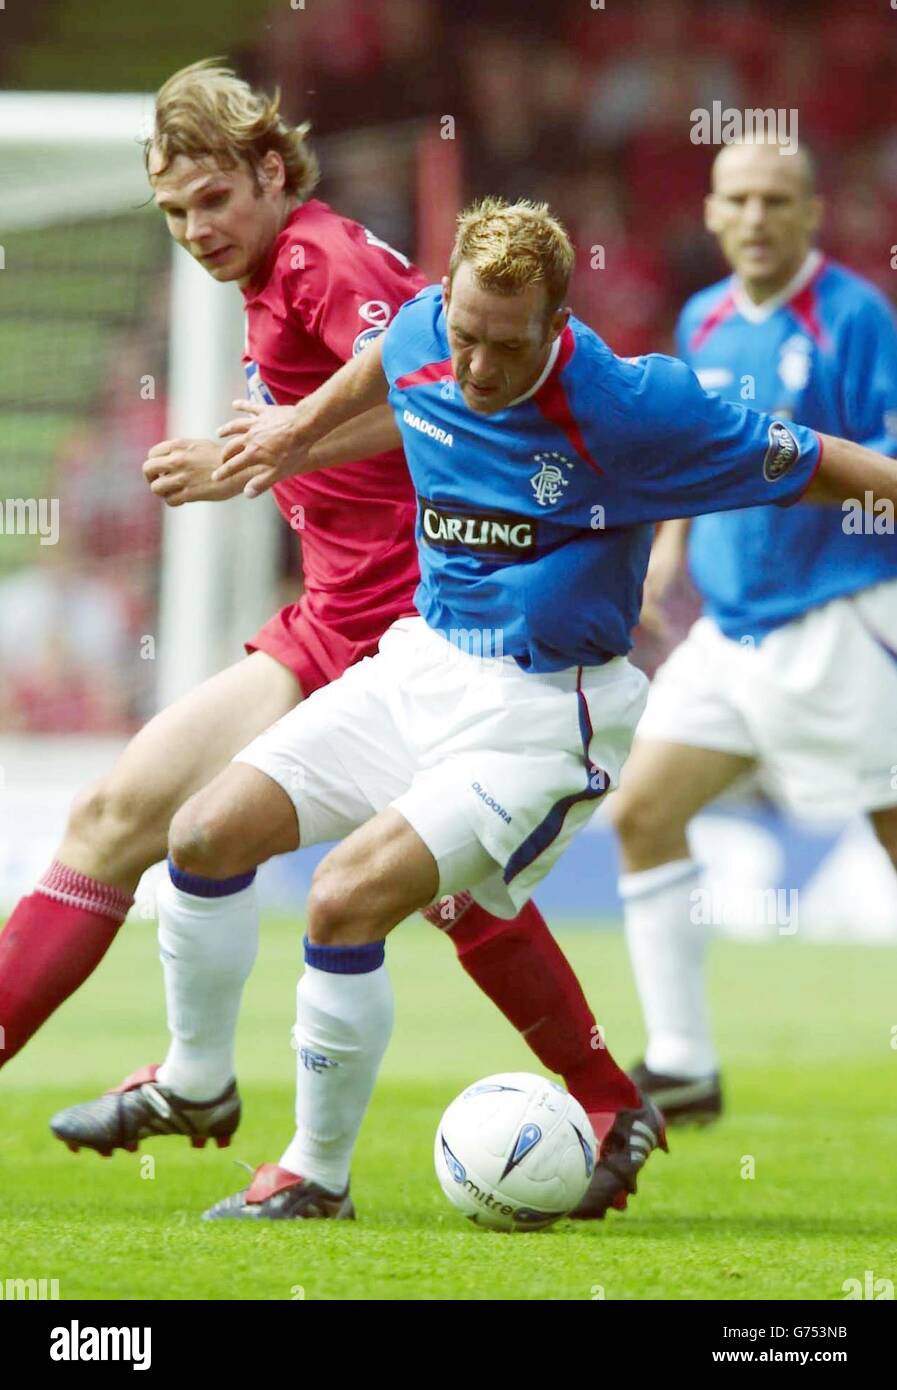 Fernando Ricksen (avant) des Rangers en action avec Markus Heikkinen d'Aberdeen lors de leur match de la Premier League de la Banque d'Écosse à Pittodrie, à Aberdeen. Banque D'Images